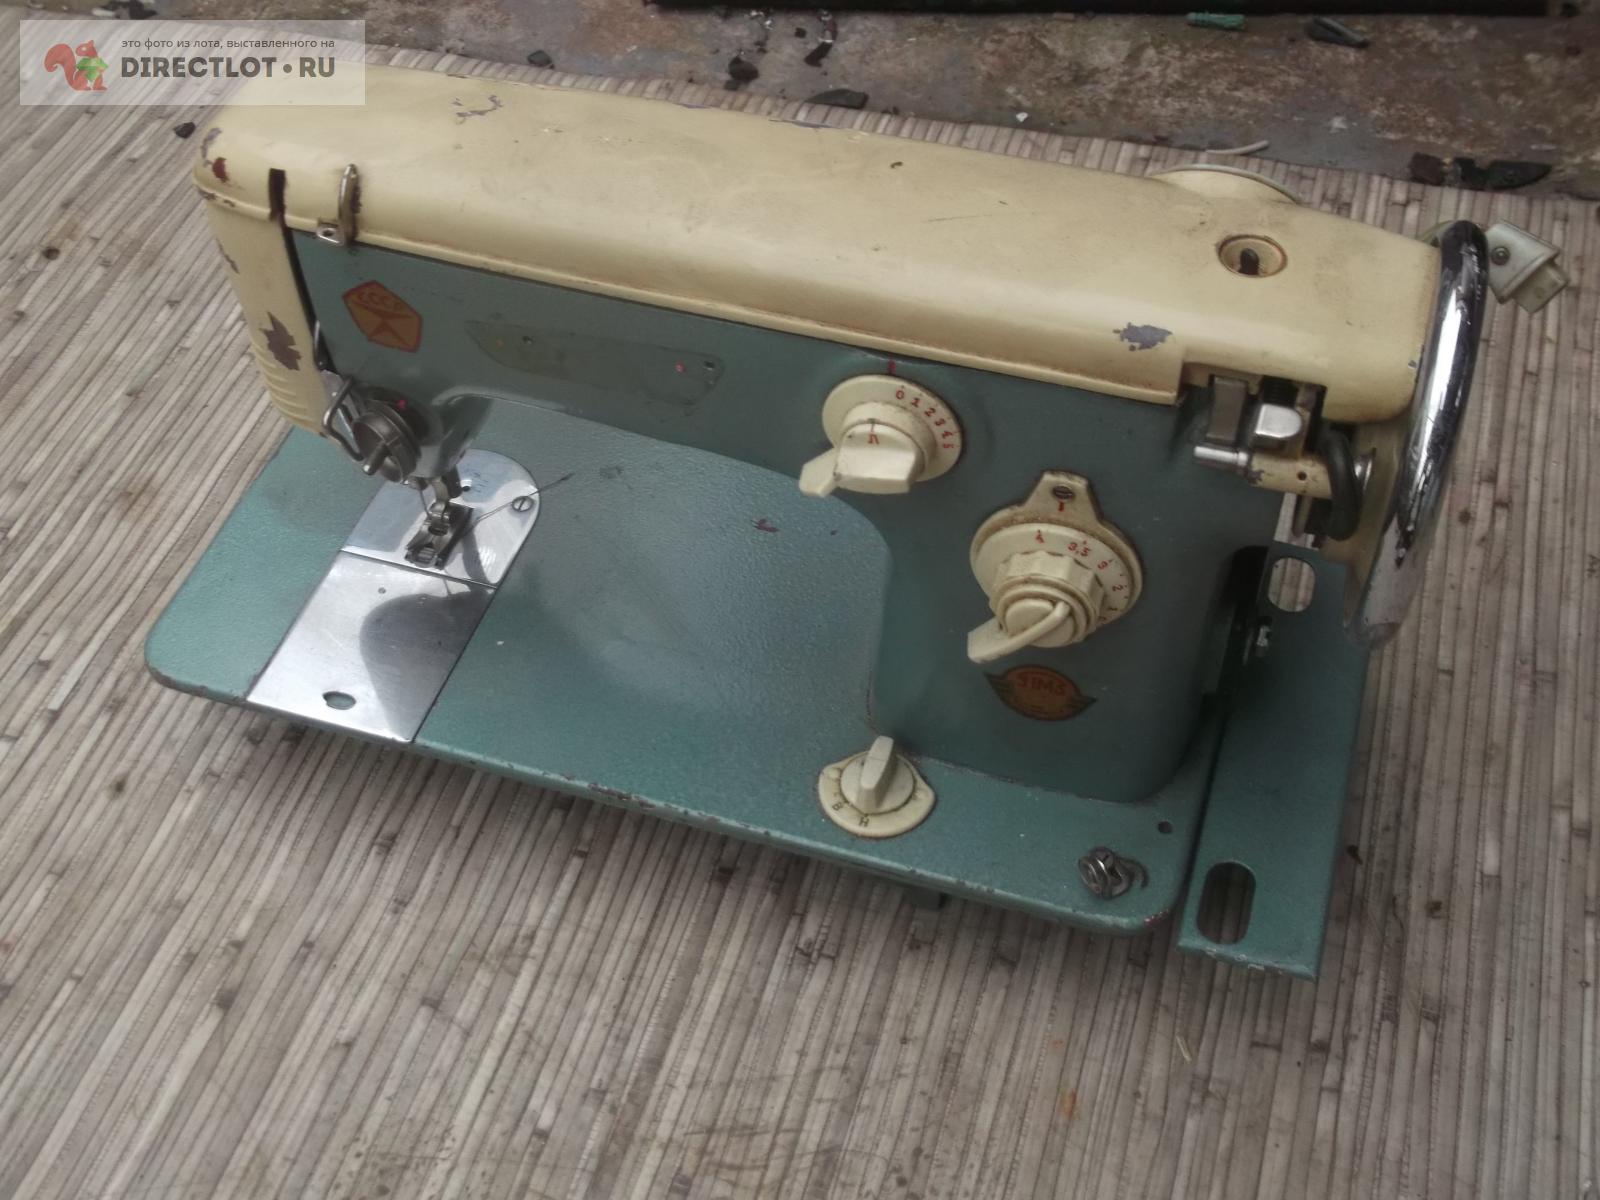 Швейная машина с приставным столиком